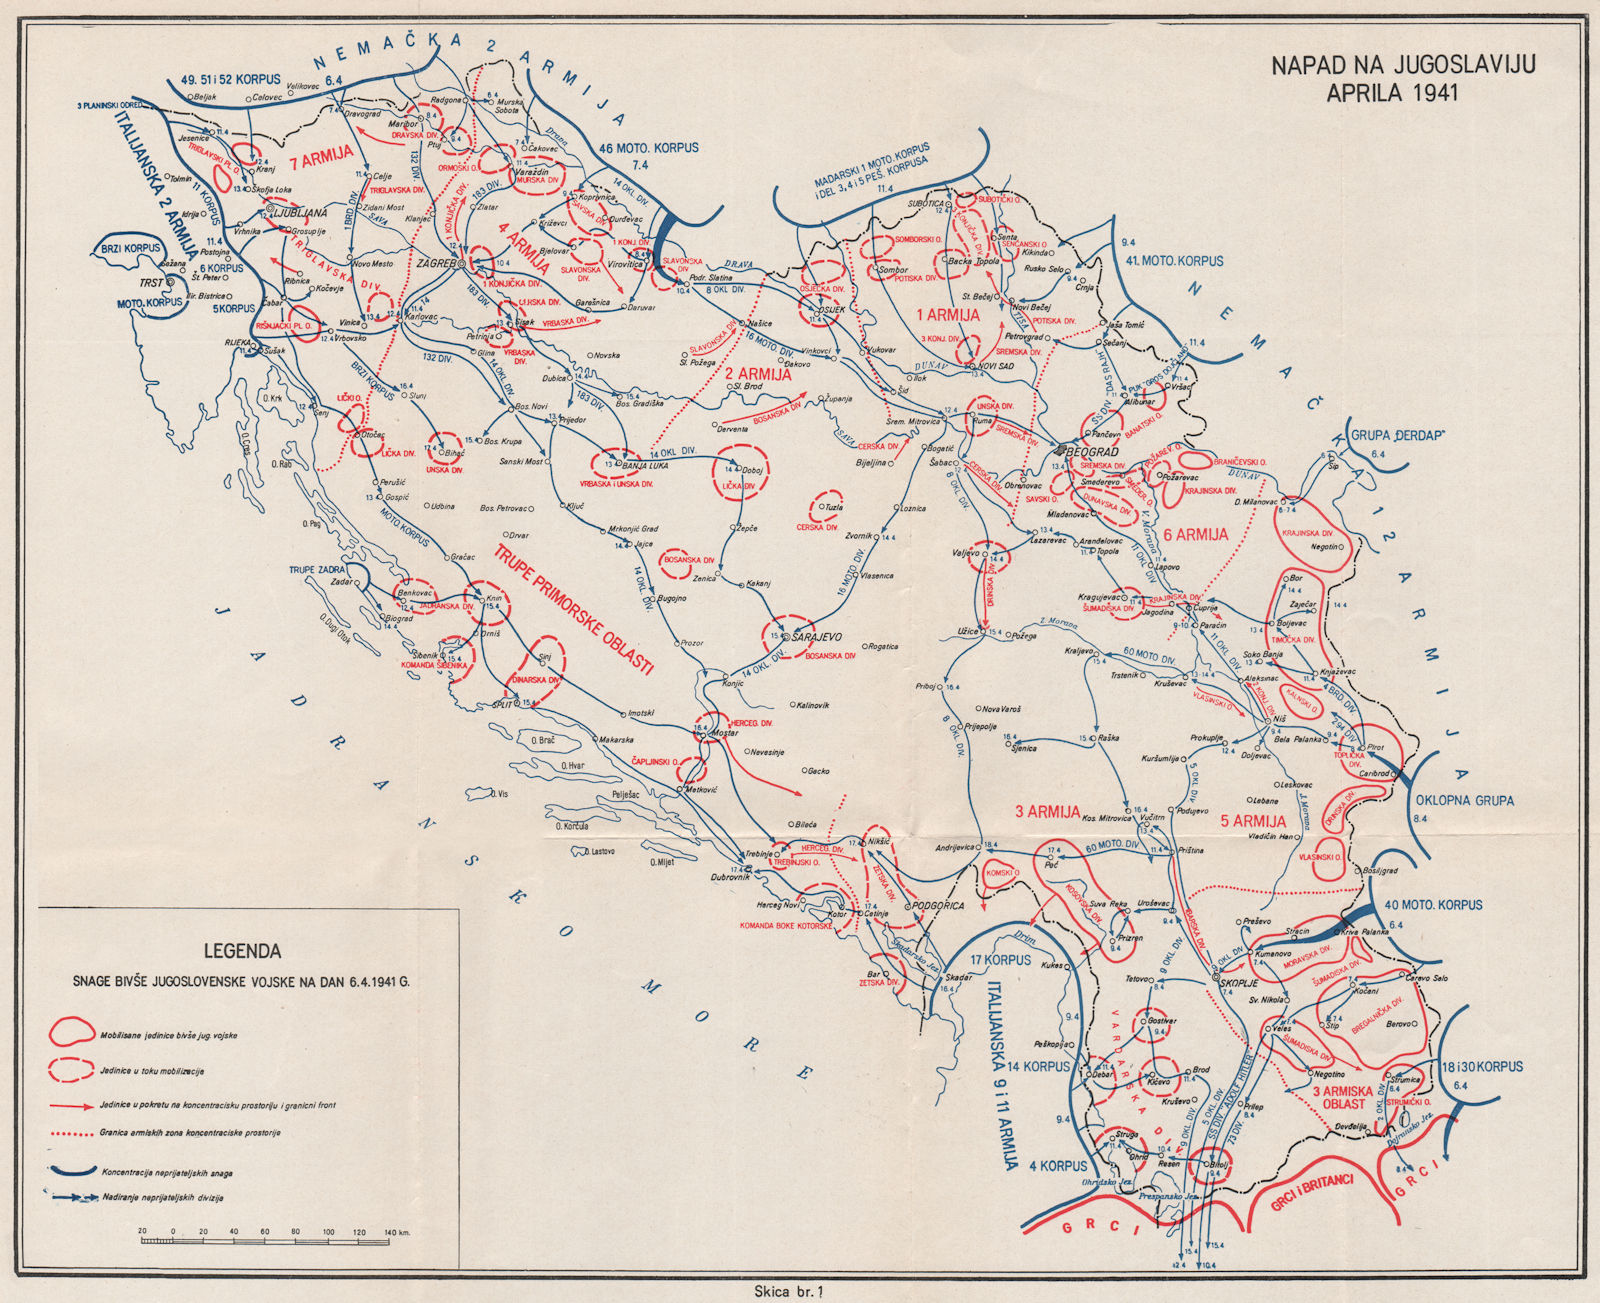 YUGOSLAVIA. The invasion of Yugoslavia in April 1941 1957 old vintage map